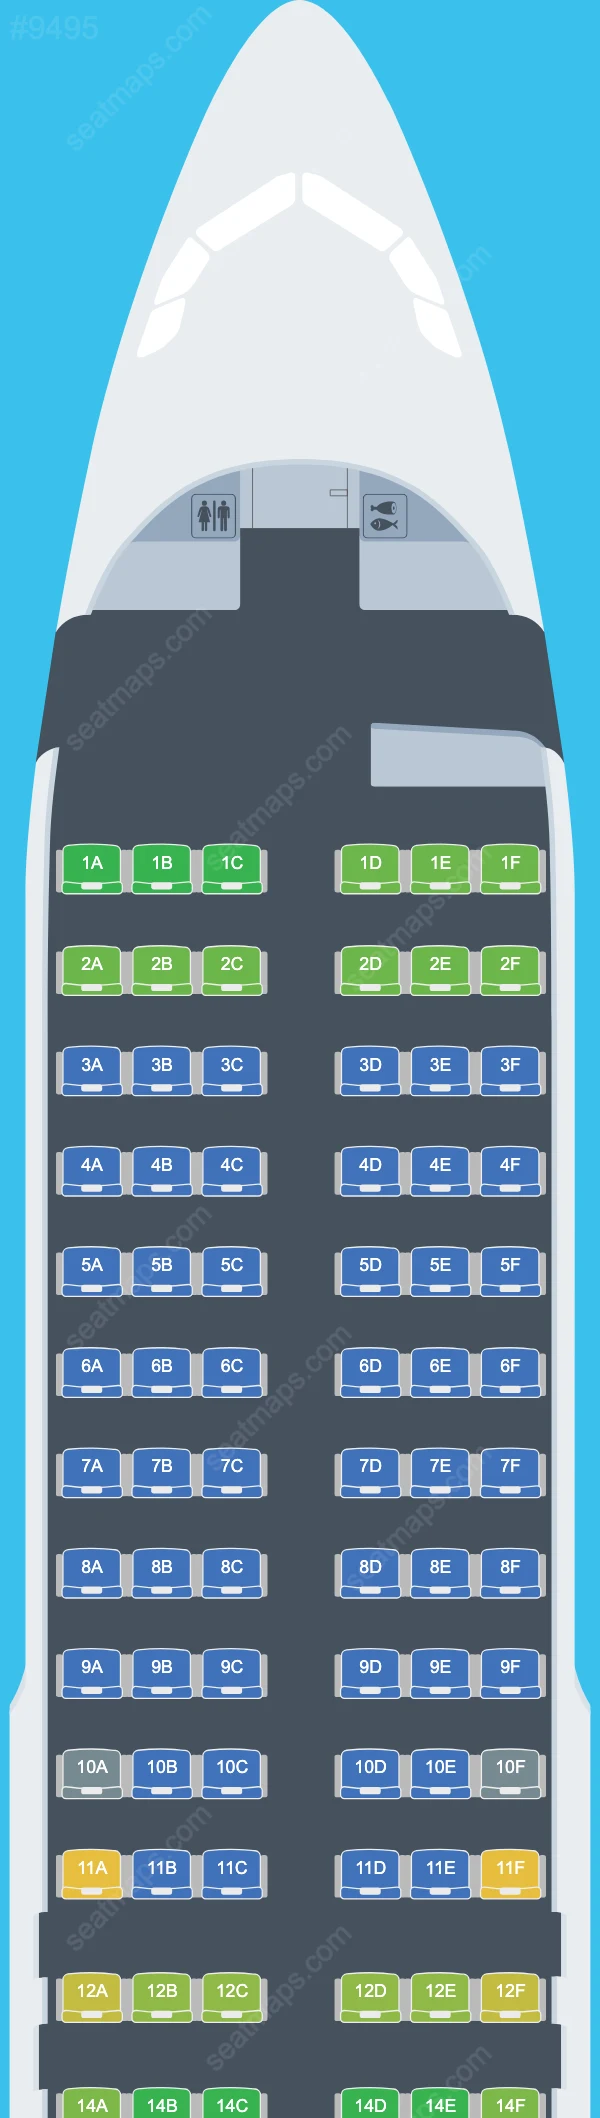 Cebu Pacific Air Airbus A320 Seat Maps A320-200neo